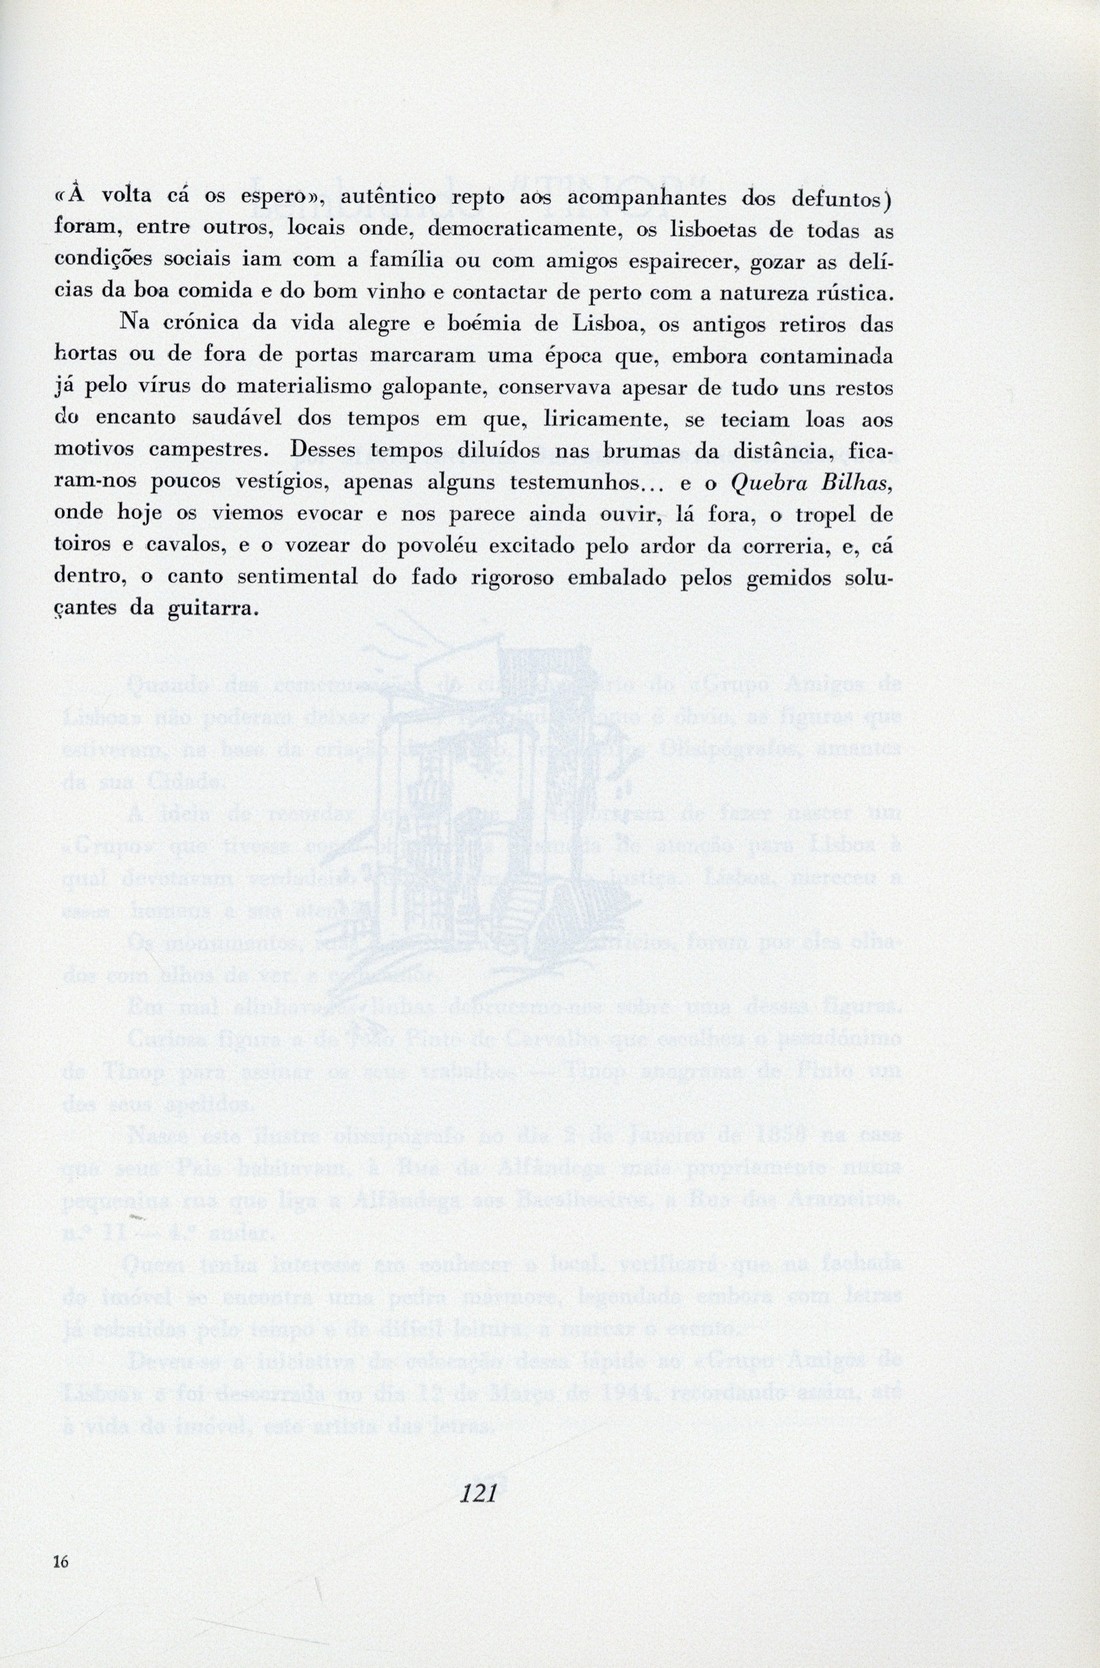 Eduardo Sucena, «Os Antigos Retiros das Hortas. Palestra proferida no Quebra Bilhas no dia 26 de Abril de 1986», in Olisipo, n.º 149, 1986